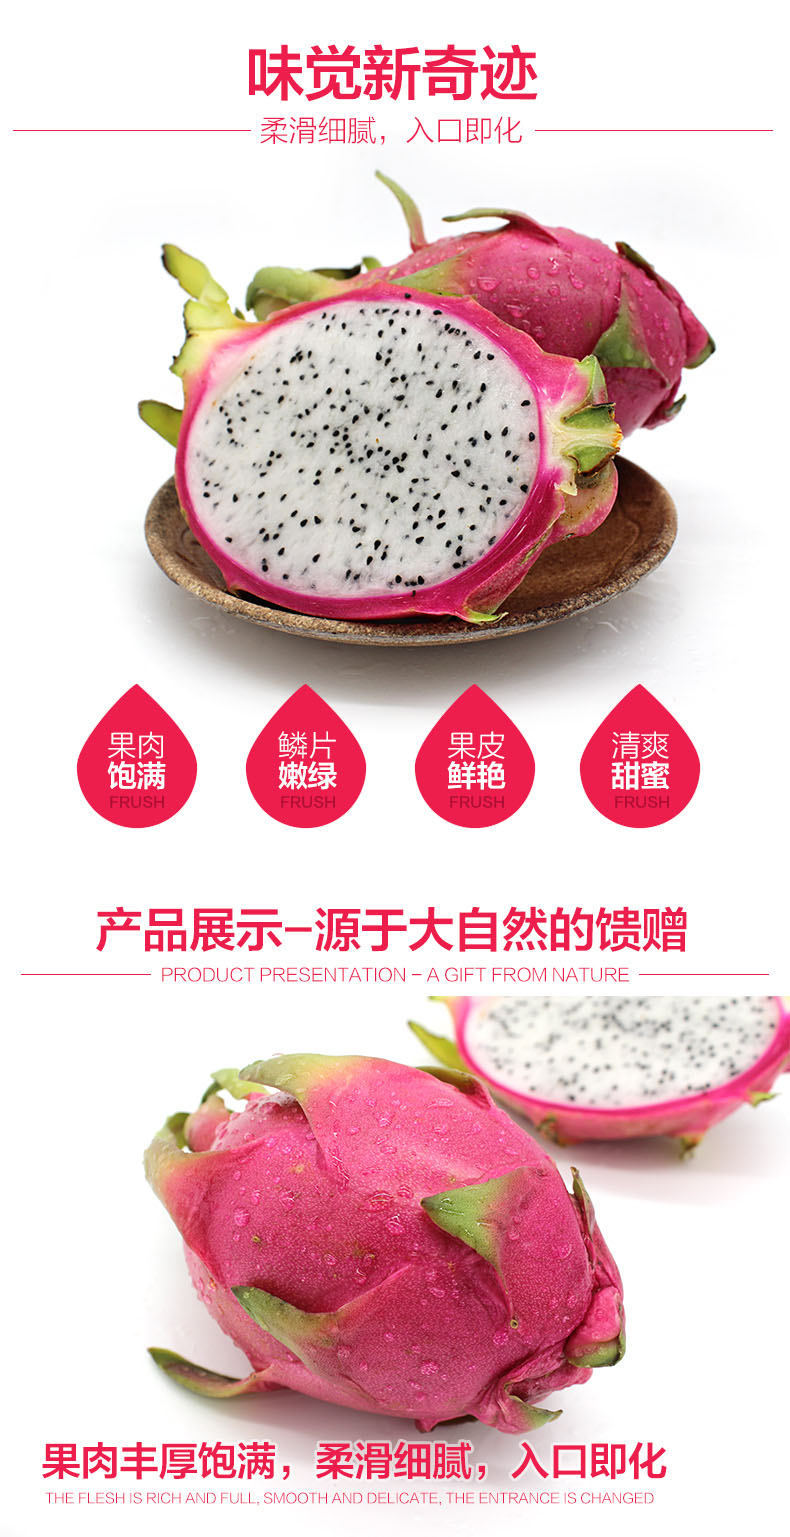 【源产地】新鲜水果正宗越南进口白心火龙果 5斤装 白肉火龙果全国包邮